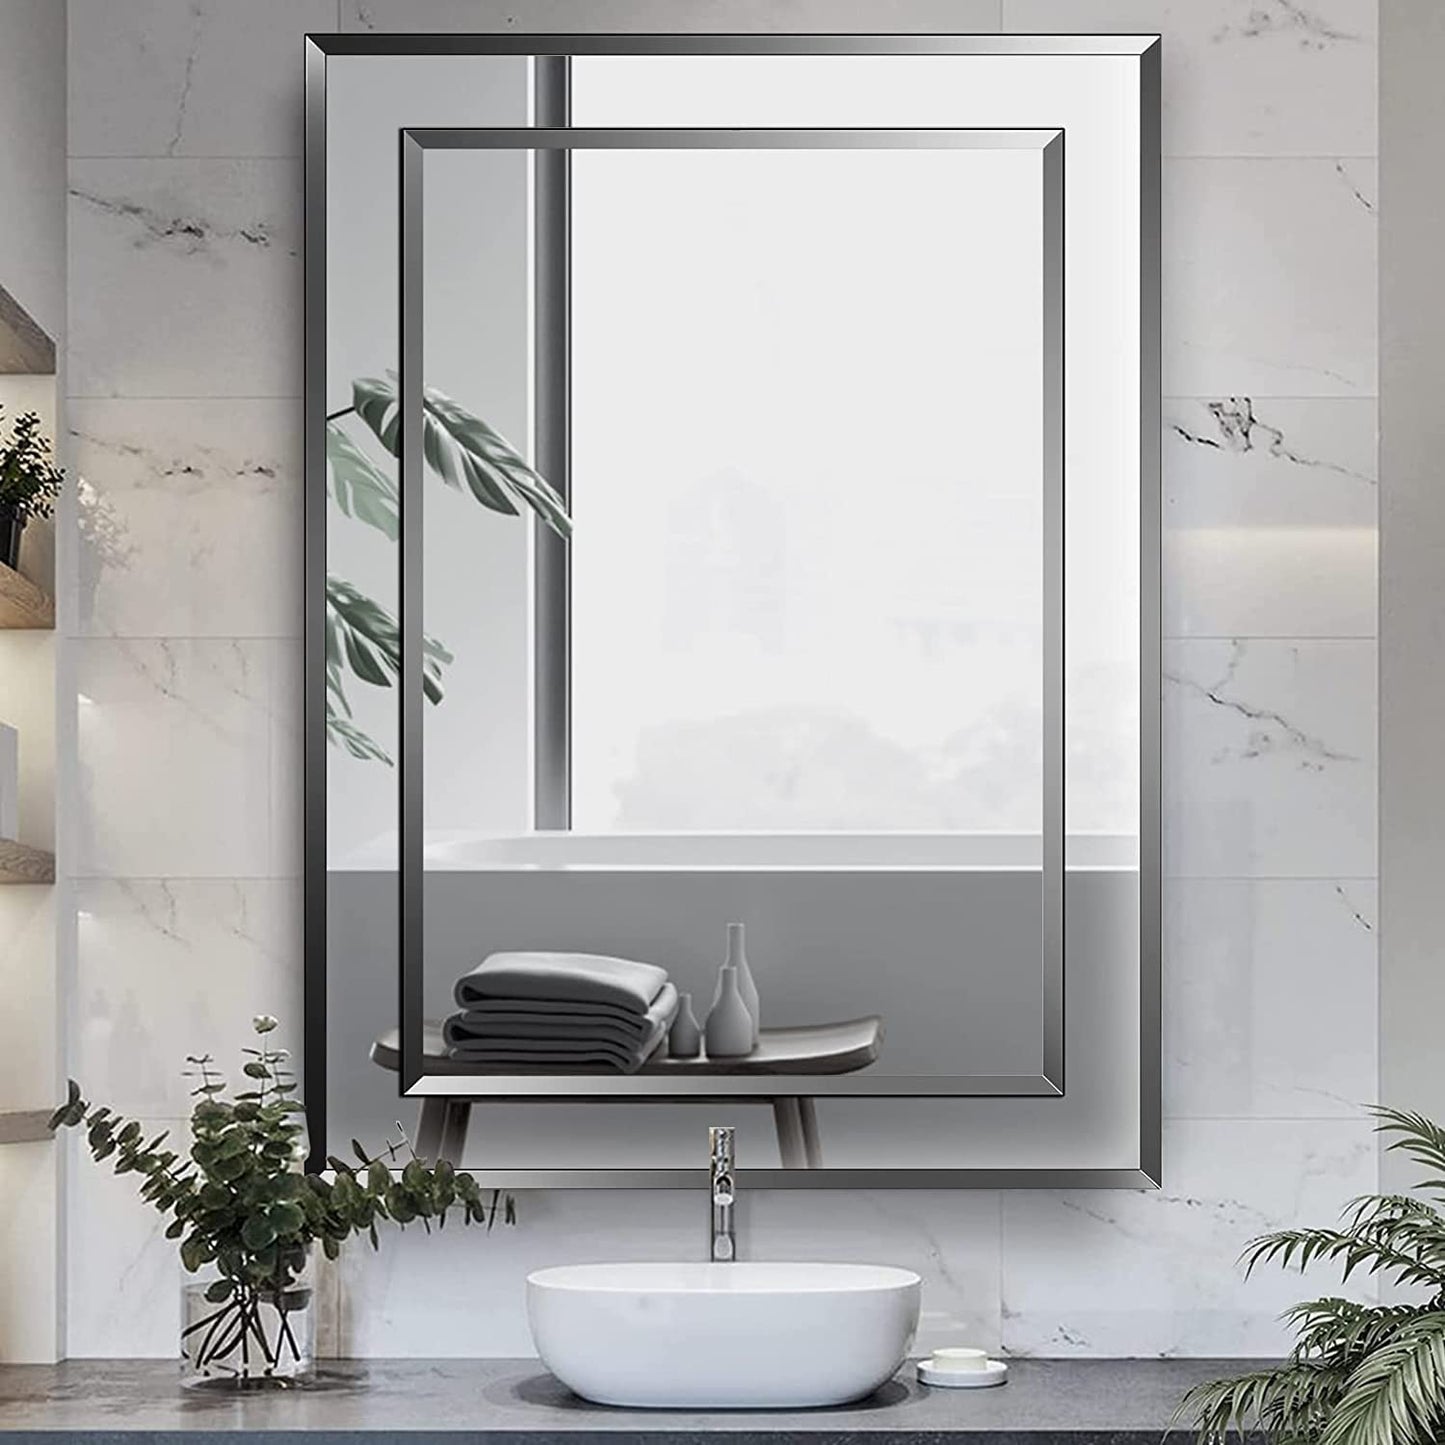 MAXYOYO Frameless Bathroom Mirror Wall Mounted, Modern Wall Mirror for Bathroom Bedroom Living Room